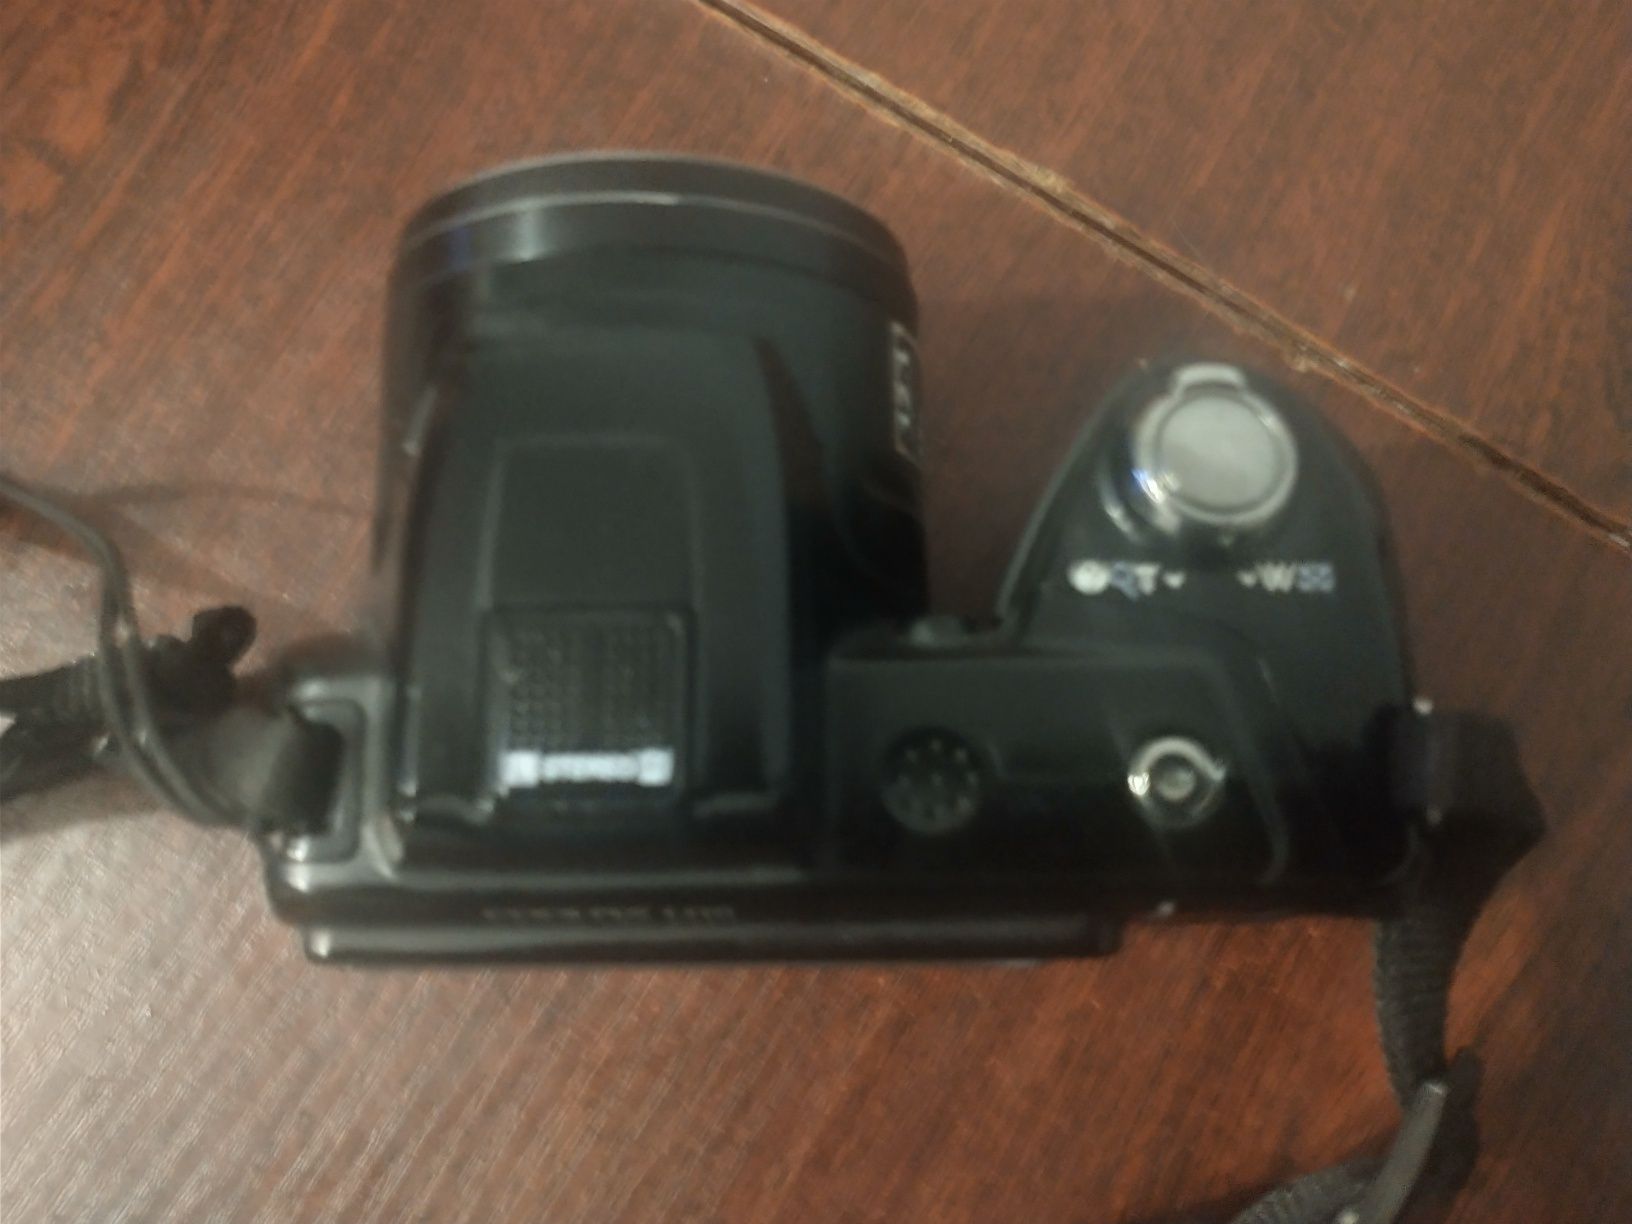 Sprzedam aparat Nikon Coolpix L110 w stanie super